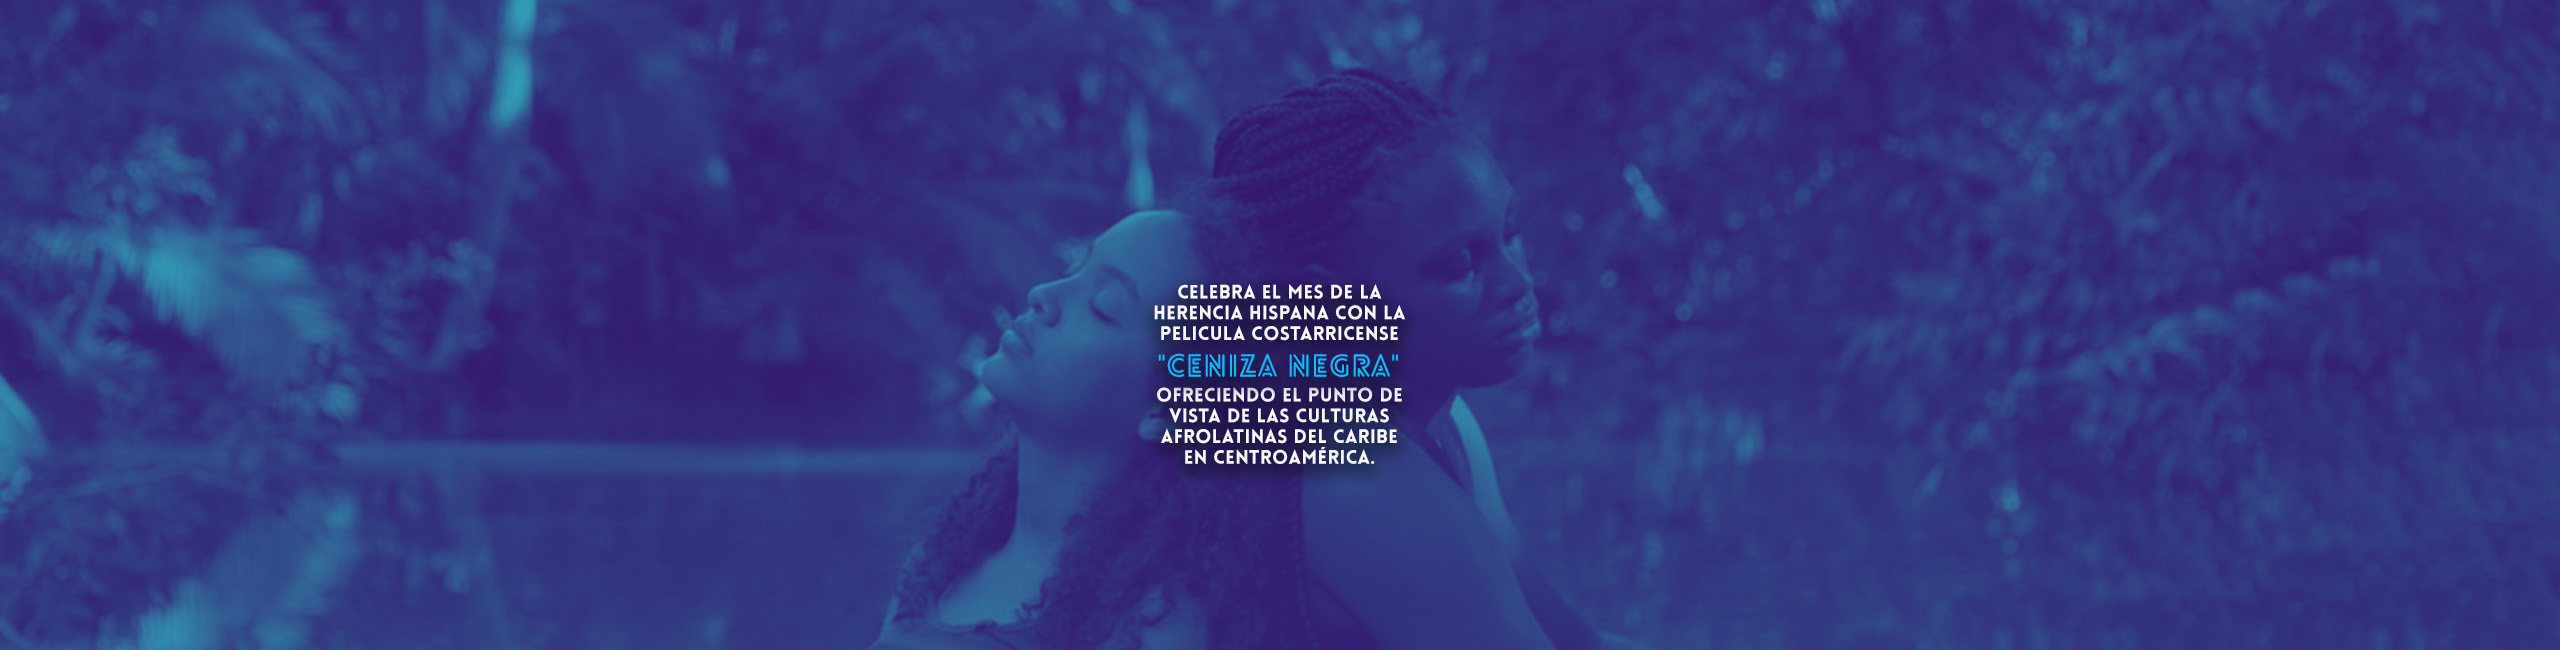 Celebra el mes de la Herencia Hispana + Streaming Gratuito Limitado de la pelicula costarricense “Ceniza Negra” ofreciendo el punto de vista de las culturas afrolatinas del Caribe en Centroamérica.